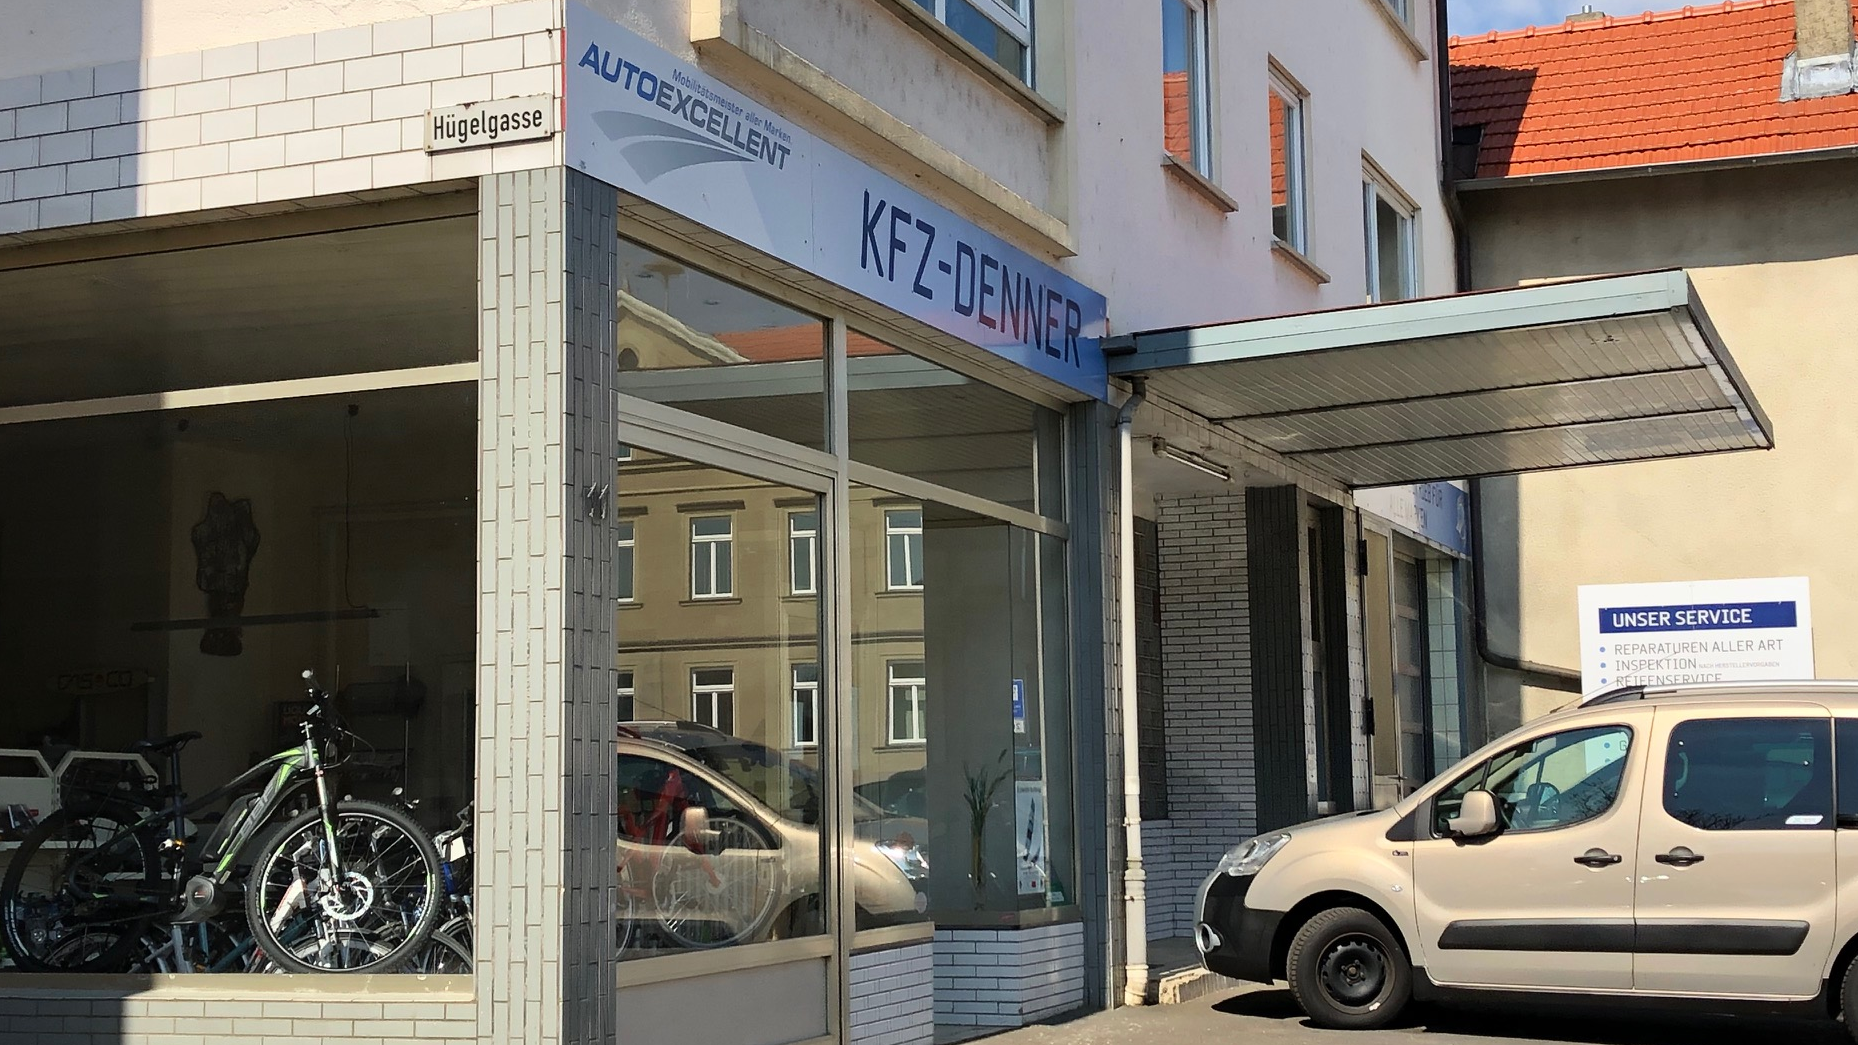 Start - Kapeller GmbH Haustechnik und KfZ Werkstatt, 63546 Hammersbach